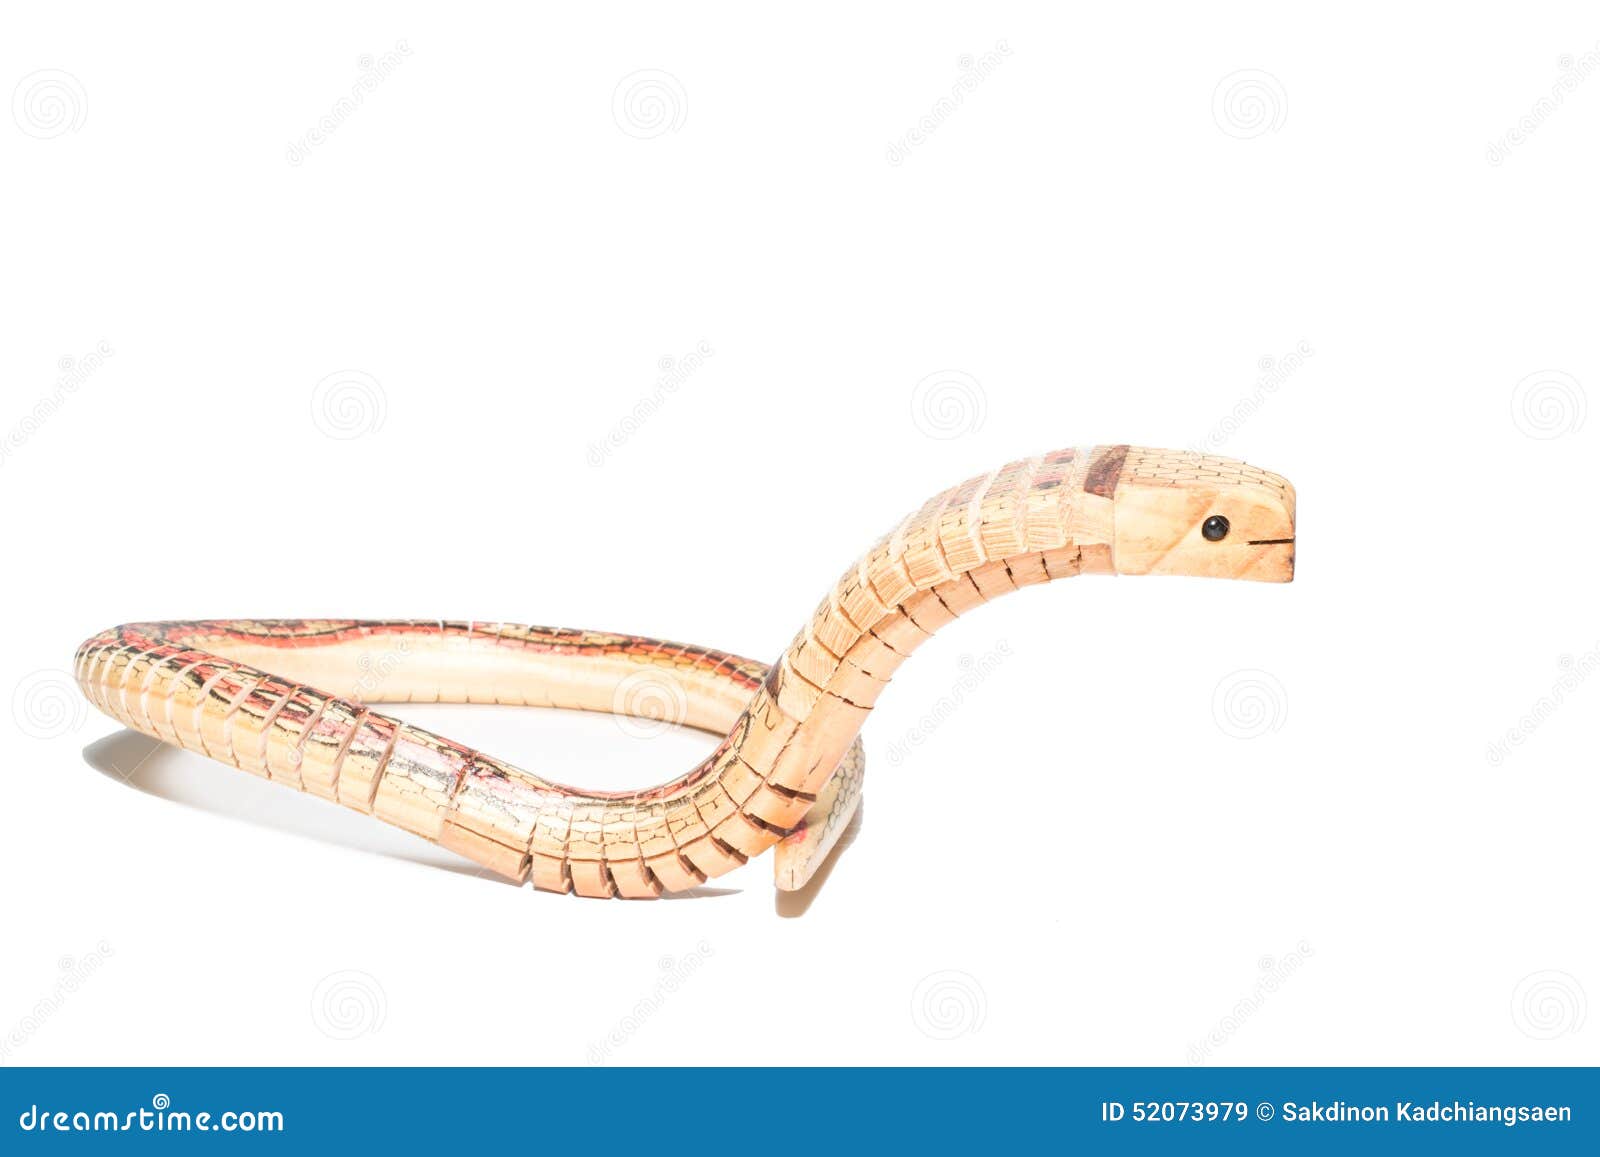 houten slang stock afbeelding. of tong, voorwerp - 52073979